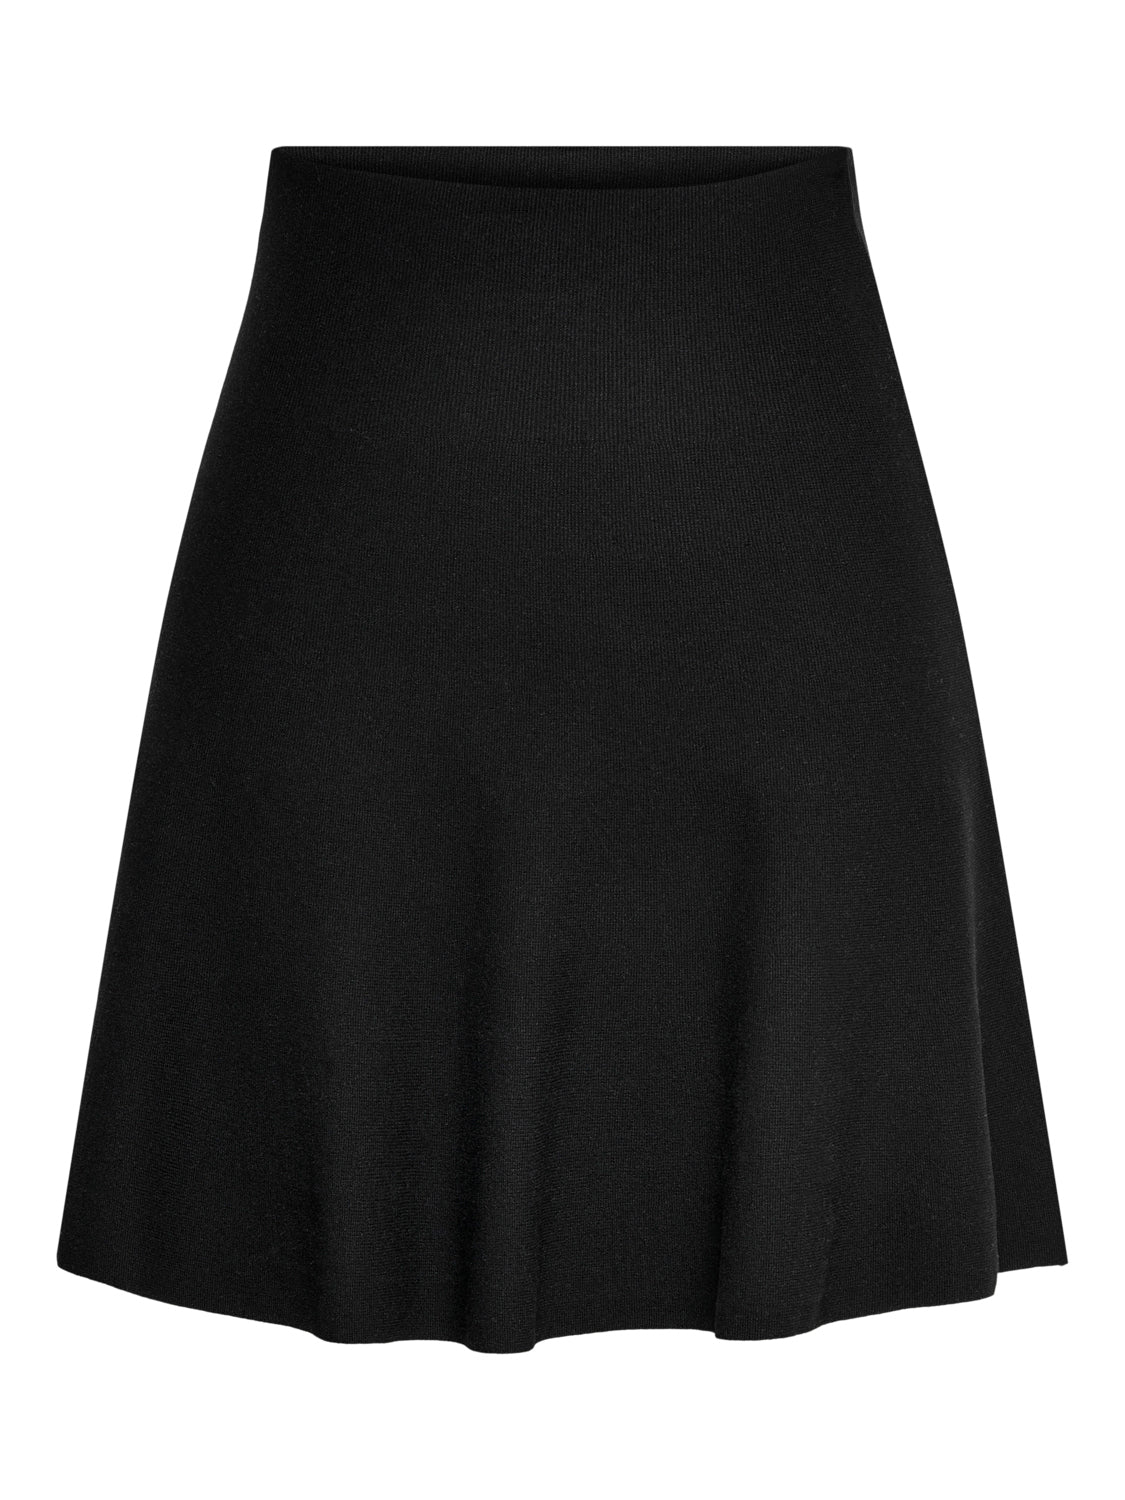 ONLSALINA Skirt - Black